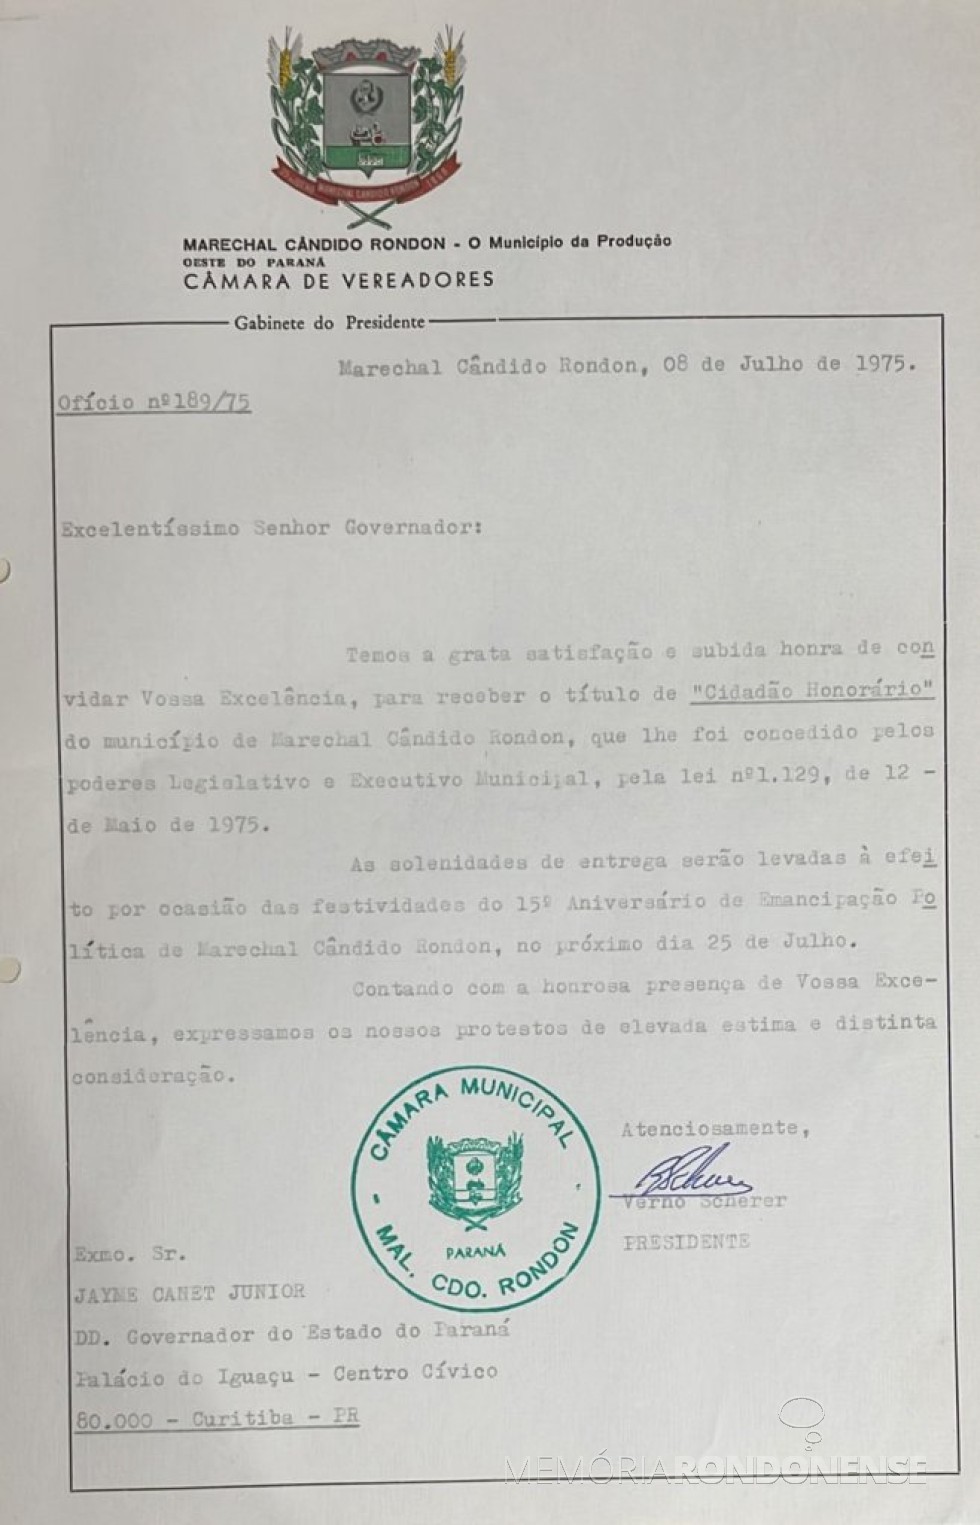 || Cópia do convite formulado pela Câmara de Vereadores de Marechal Cândido Rondon ao governador Jayme Canet Junior para receber o título de Cidadão Honrário, em julho de 1975 .
Imagem: Acervo Edilidade citada - FOTO 4 - 